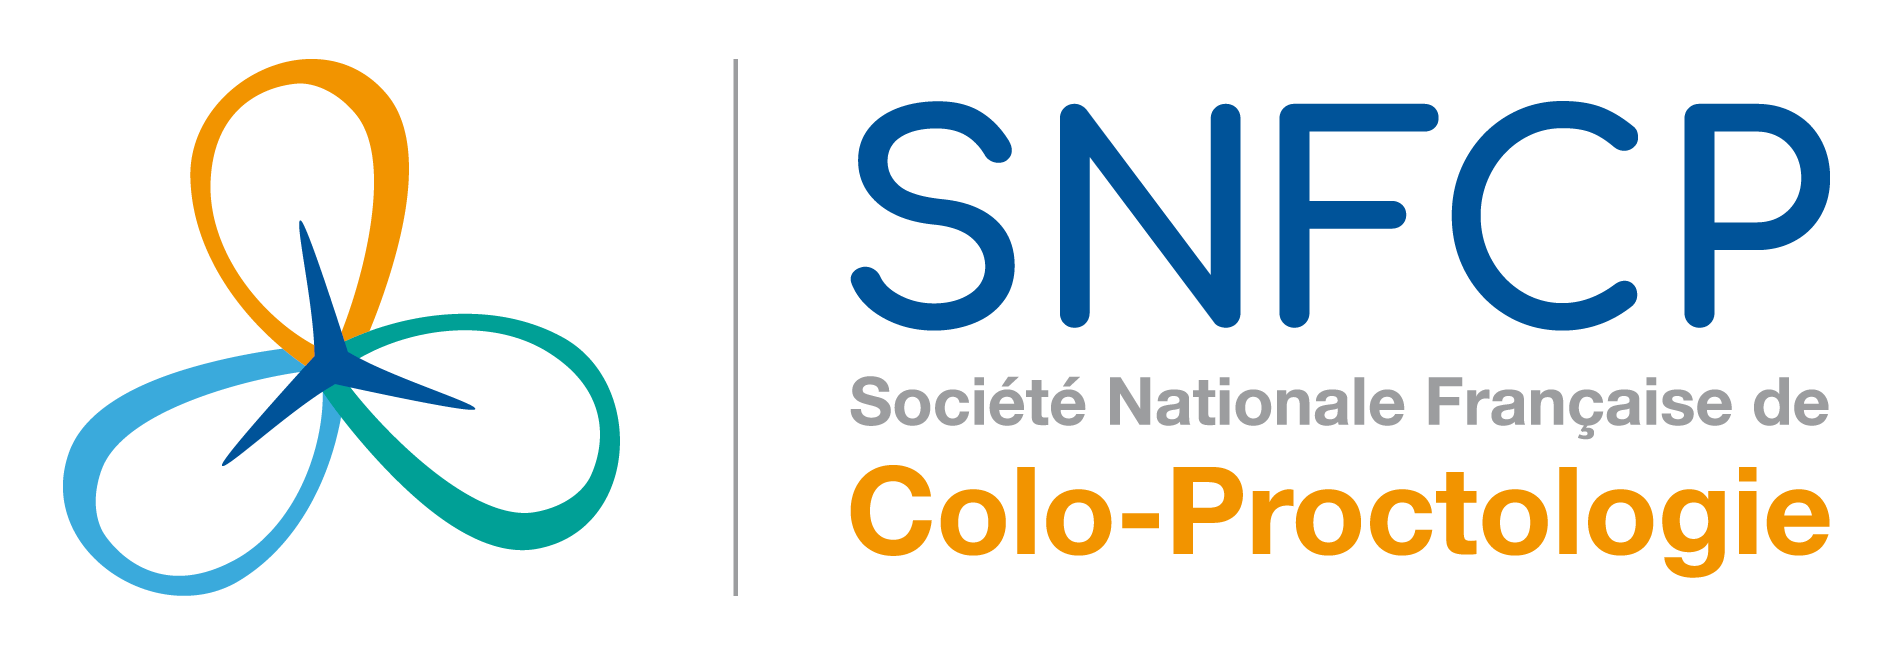 SNFCP société nationale francophone colo-proctologie